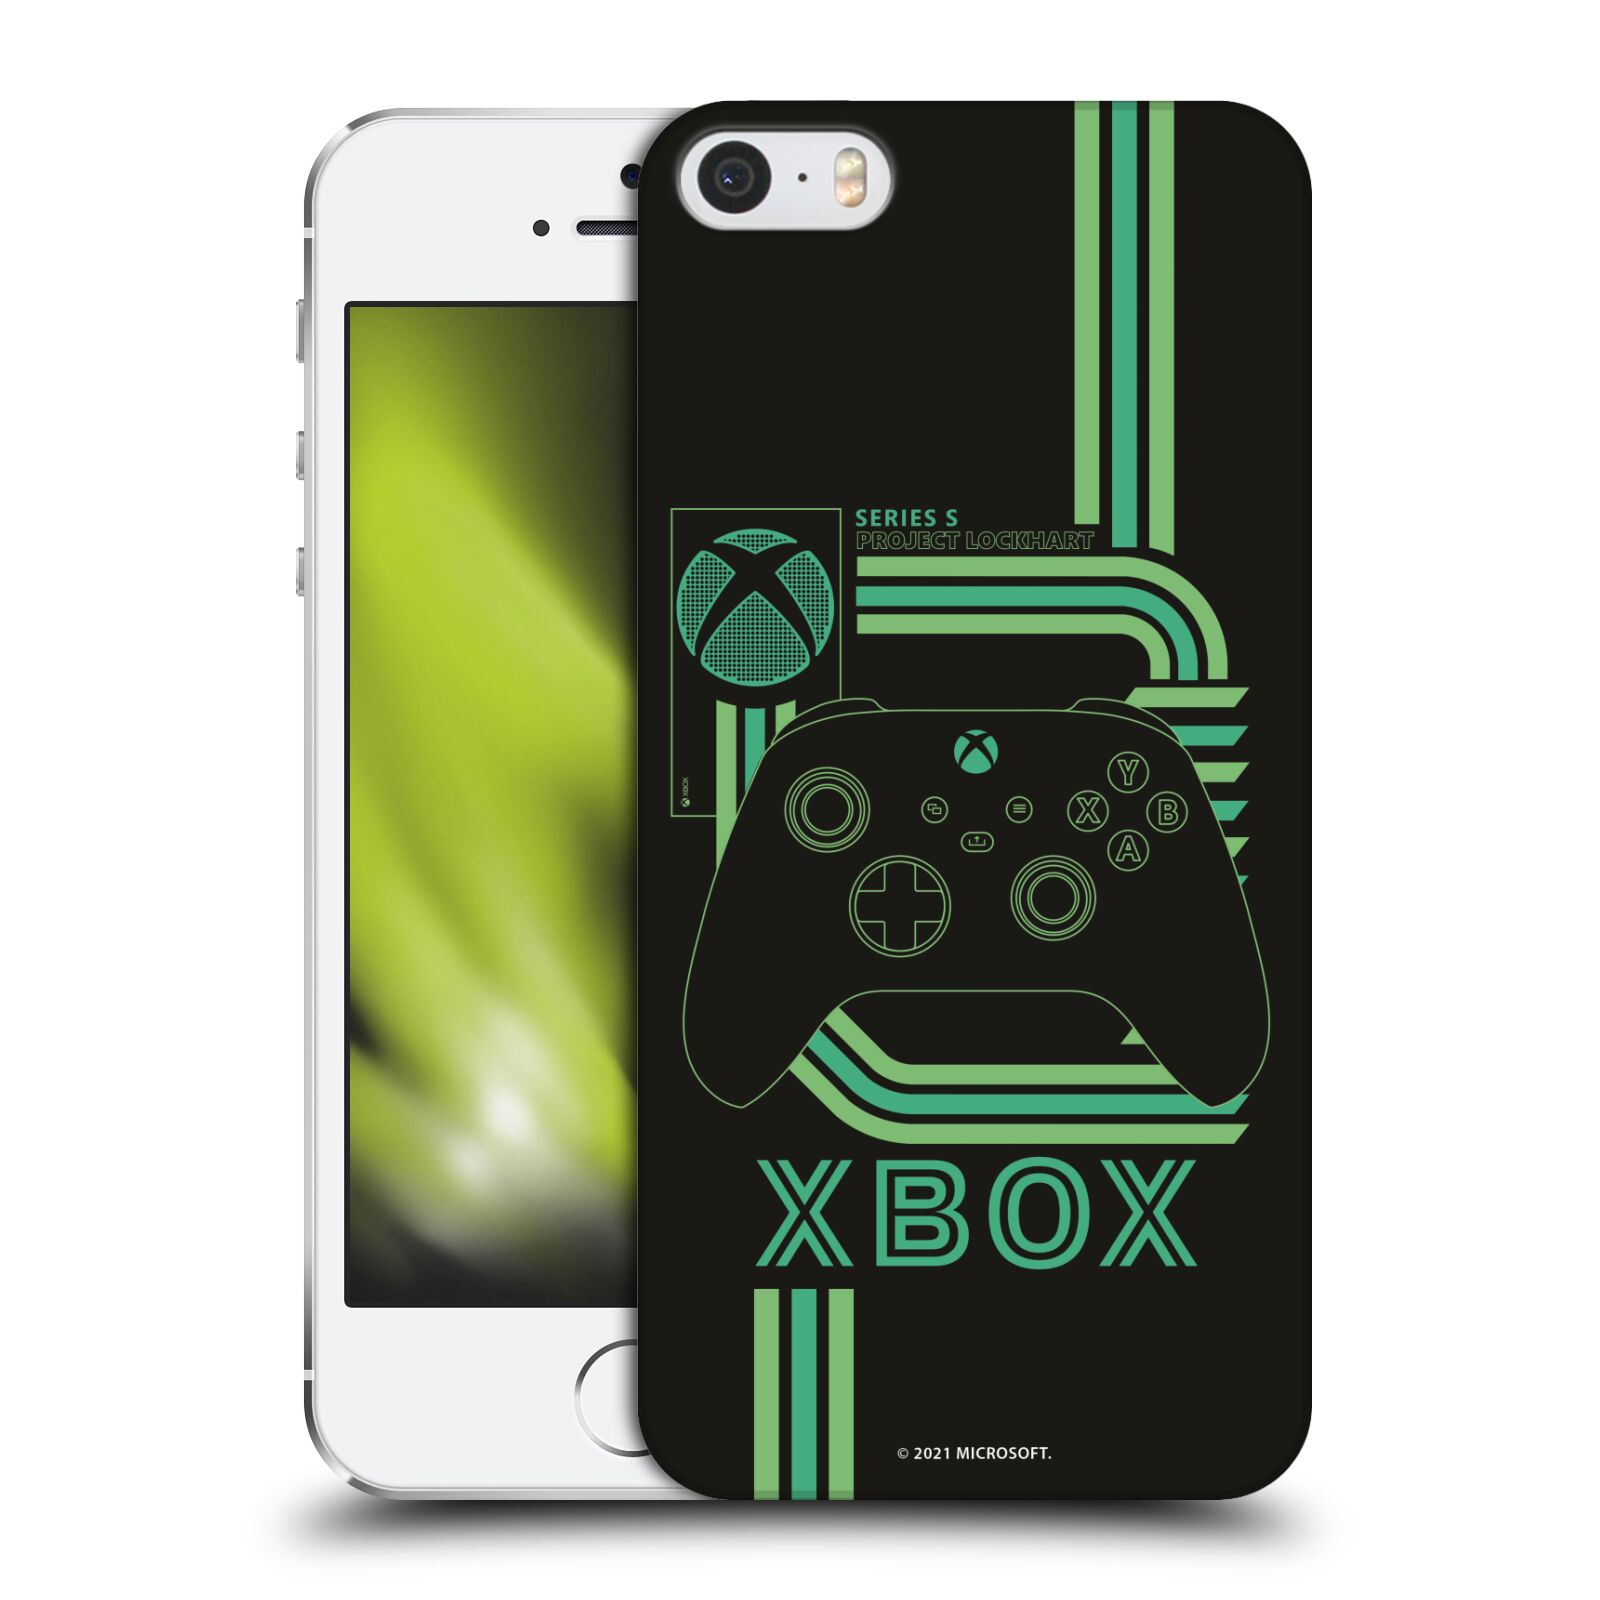 Zadní obal pro mobil Apple Iphone 5/5S/SE 2015 - HEAD CASE - Xbox Art